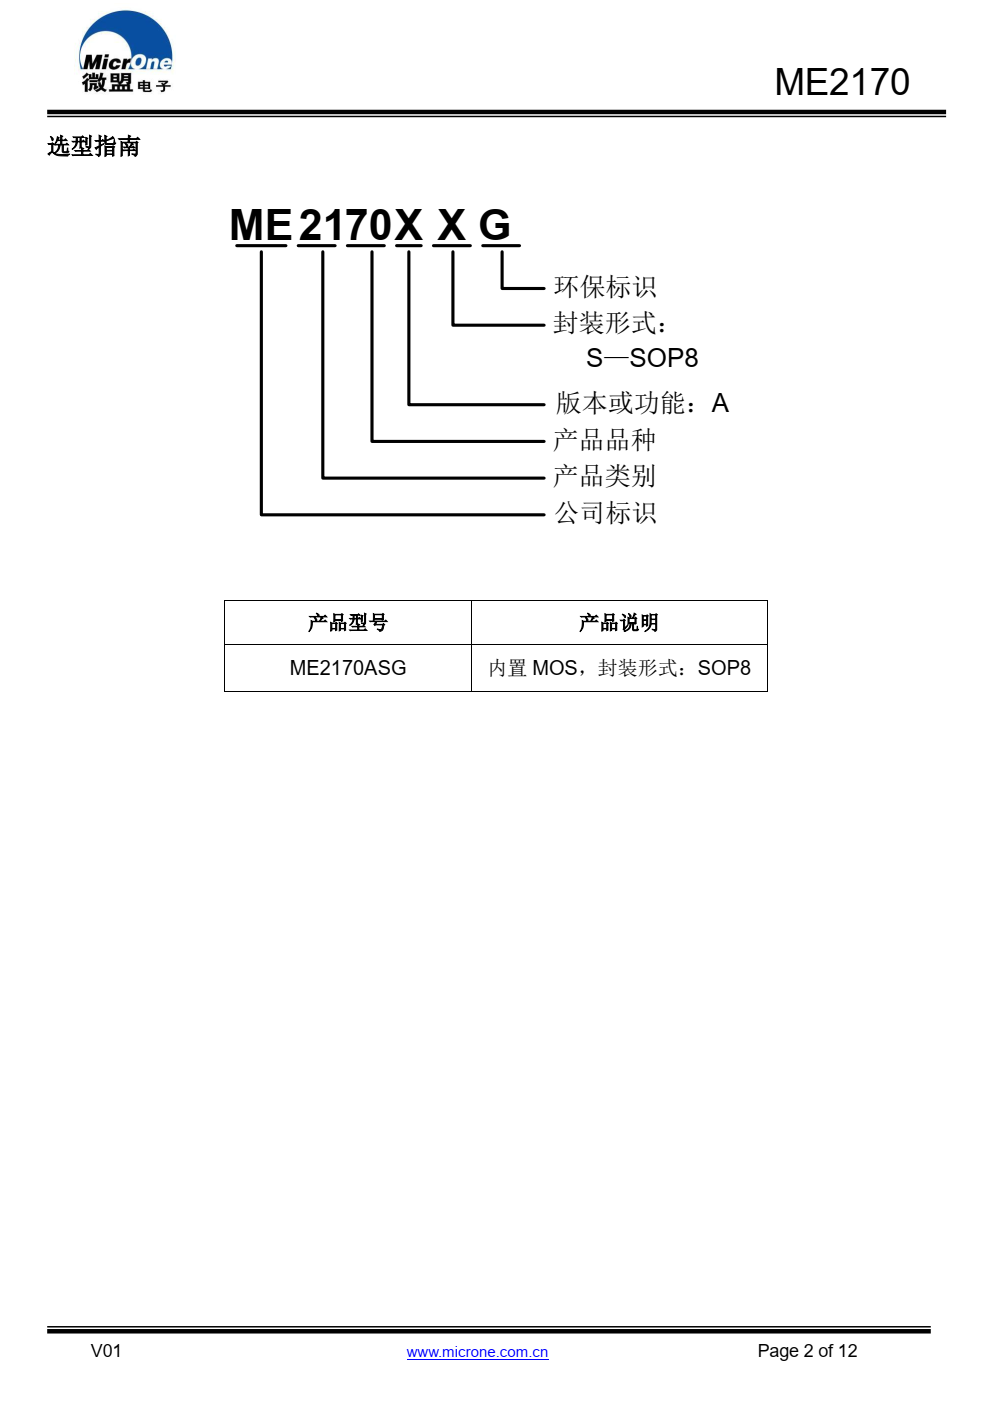 ME2170是一款由基准电压源、振荡电路、误 差放大电路、相位补偿电路、电流限制电路等构成 的CMOS升压型DC/DC LED驱动